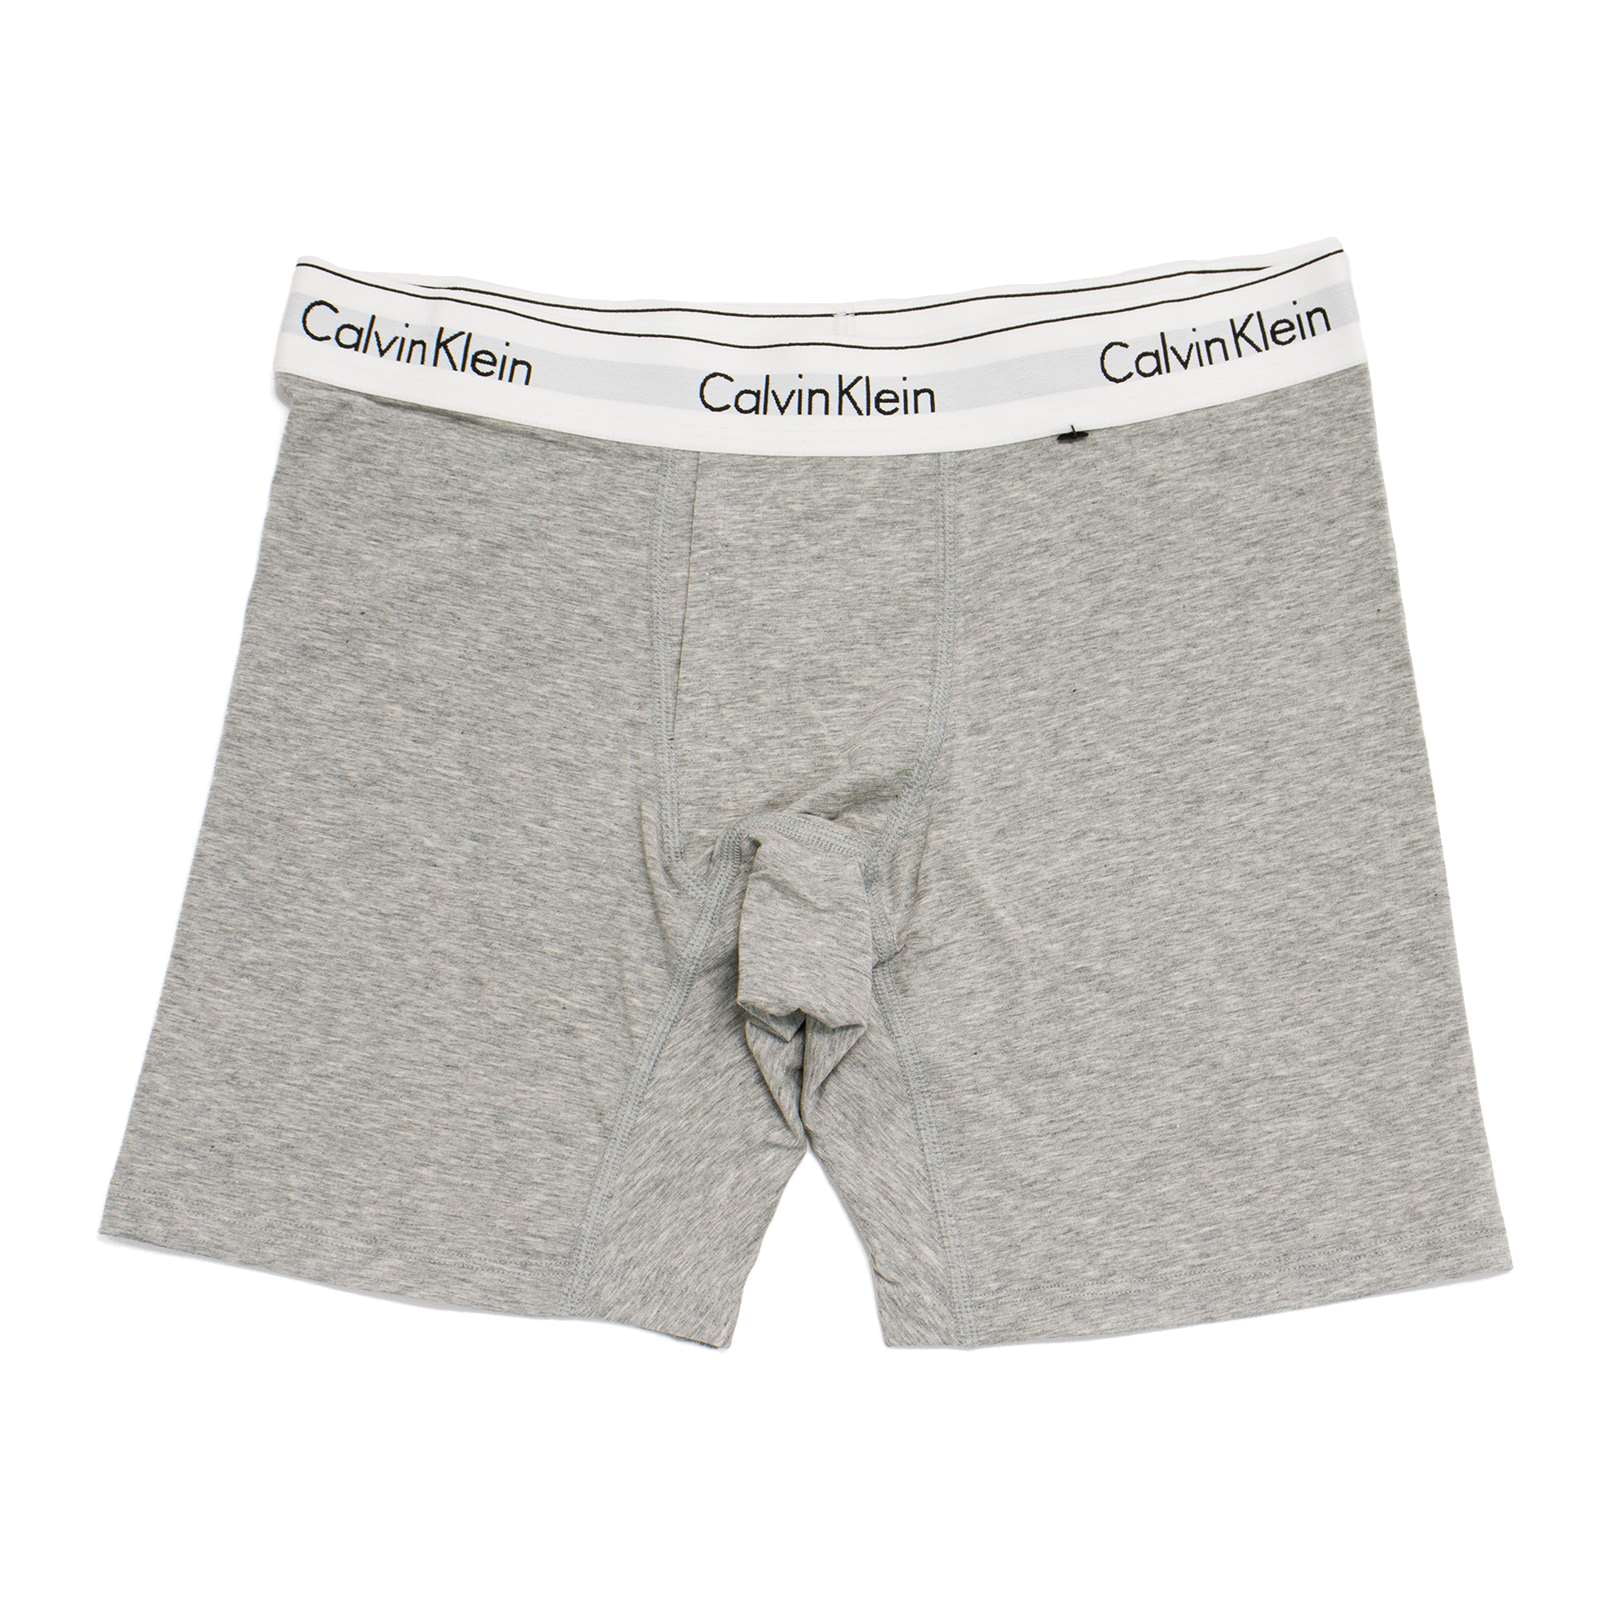 Calvin Klein Women's Modern Cotton Boxer Brief, Grey Heather,M - US